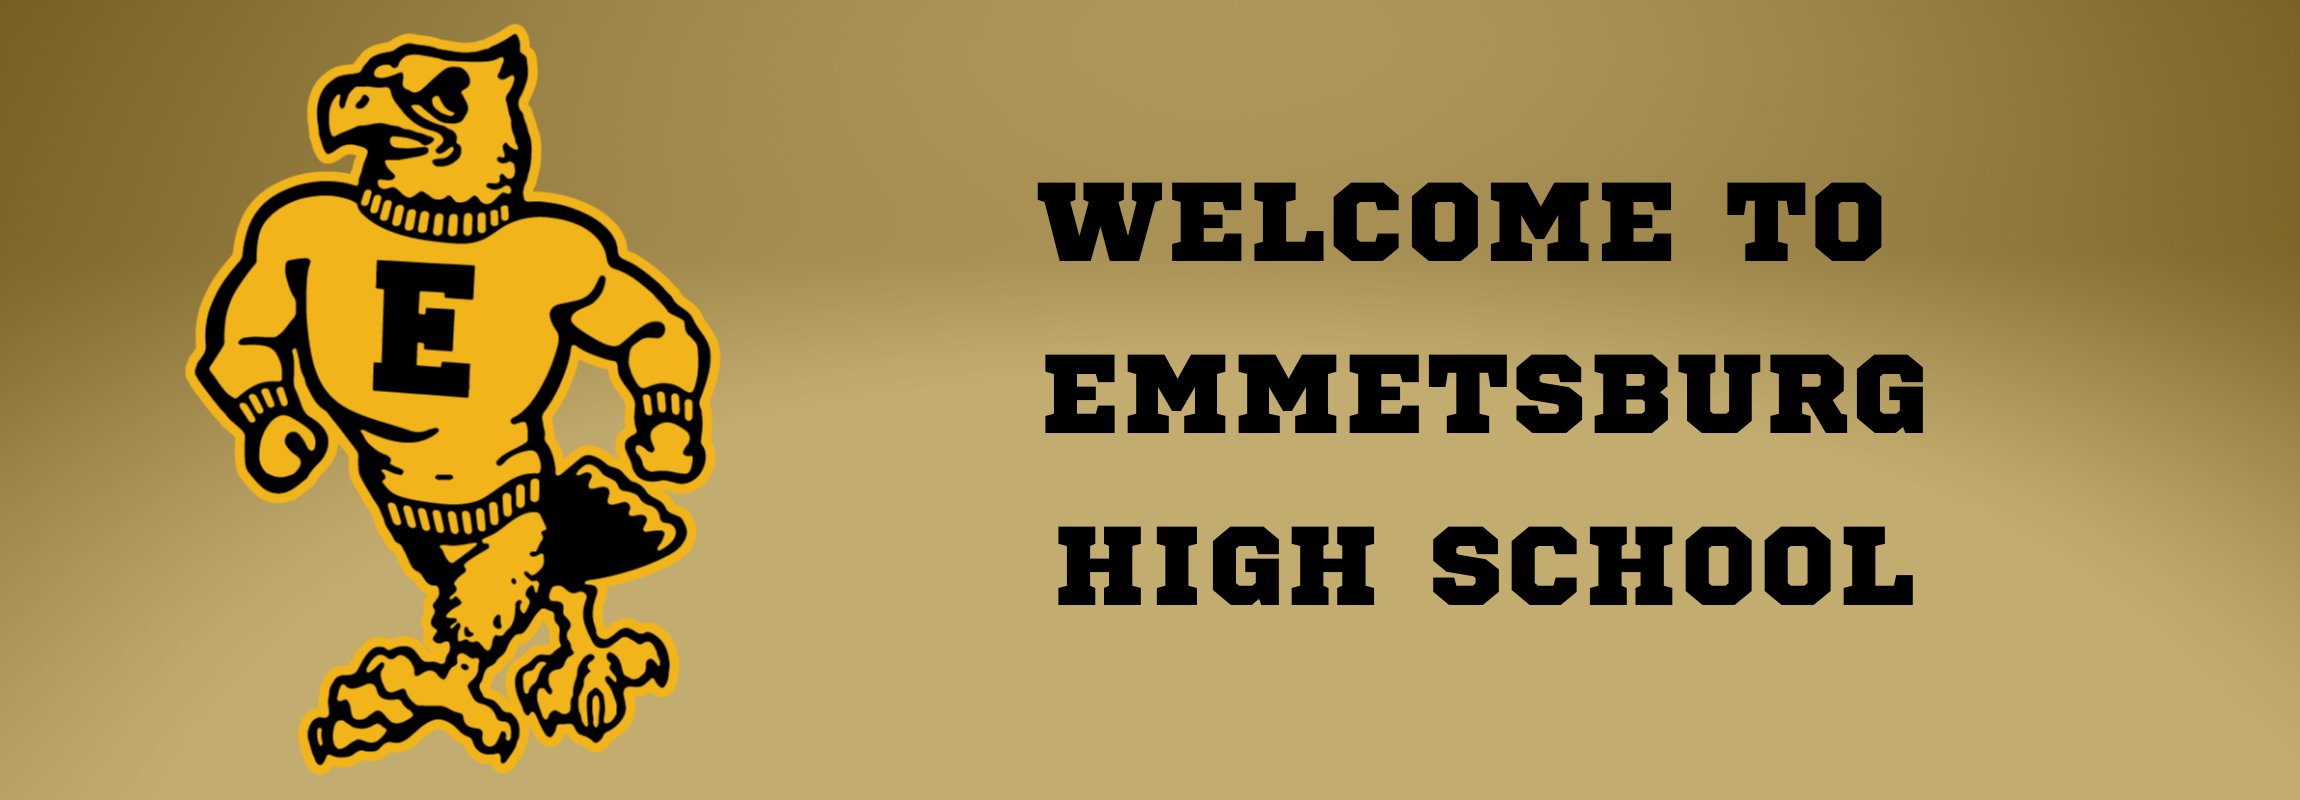 WELCOME TO EMMETSBURG HIGH SCHOOL